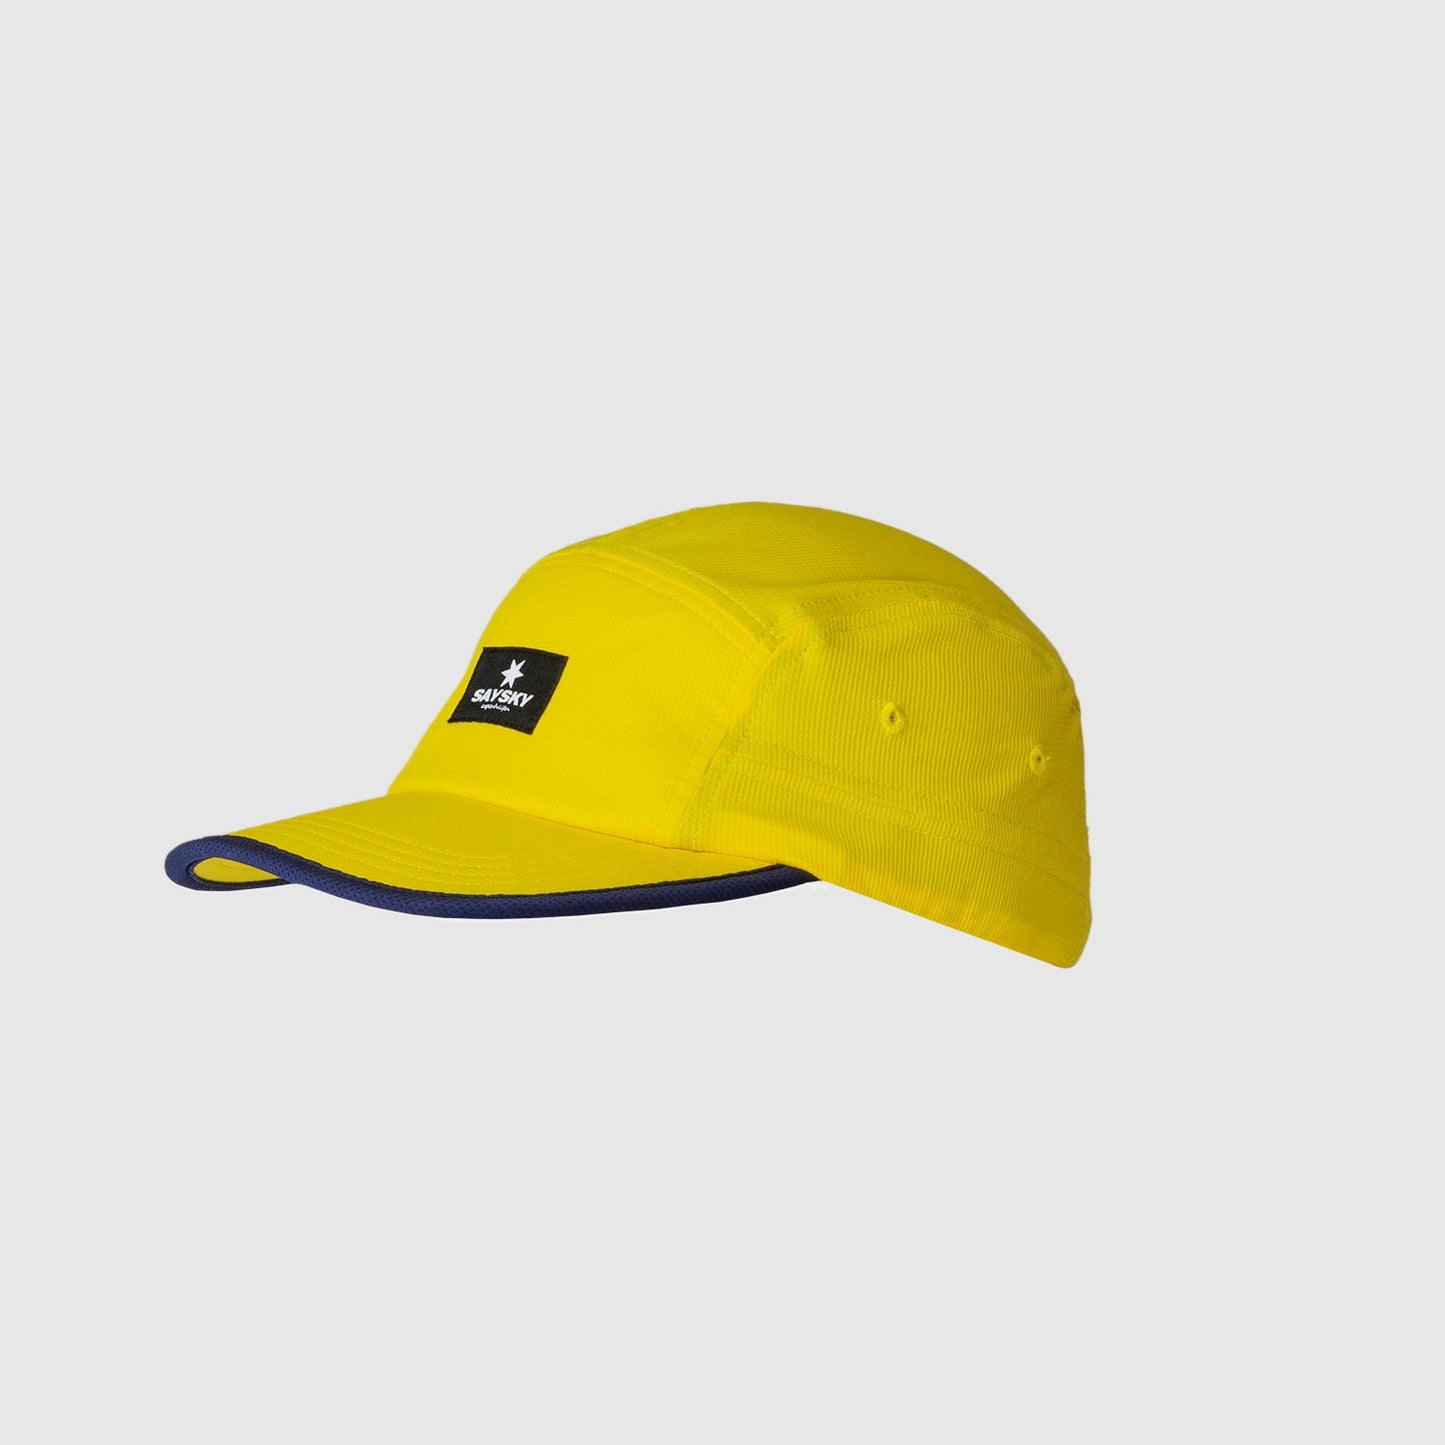 ランニングキャップ HMAHA04 Blaze Cap - Empire Yellow [ユニセックス]